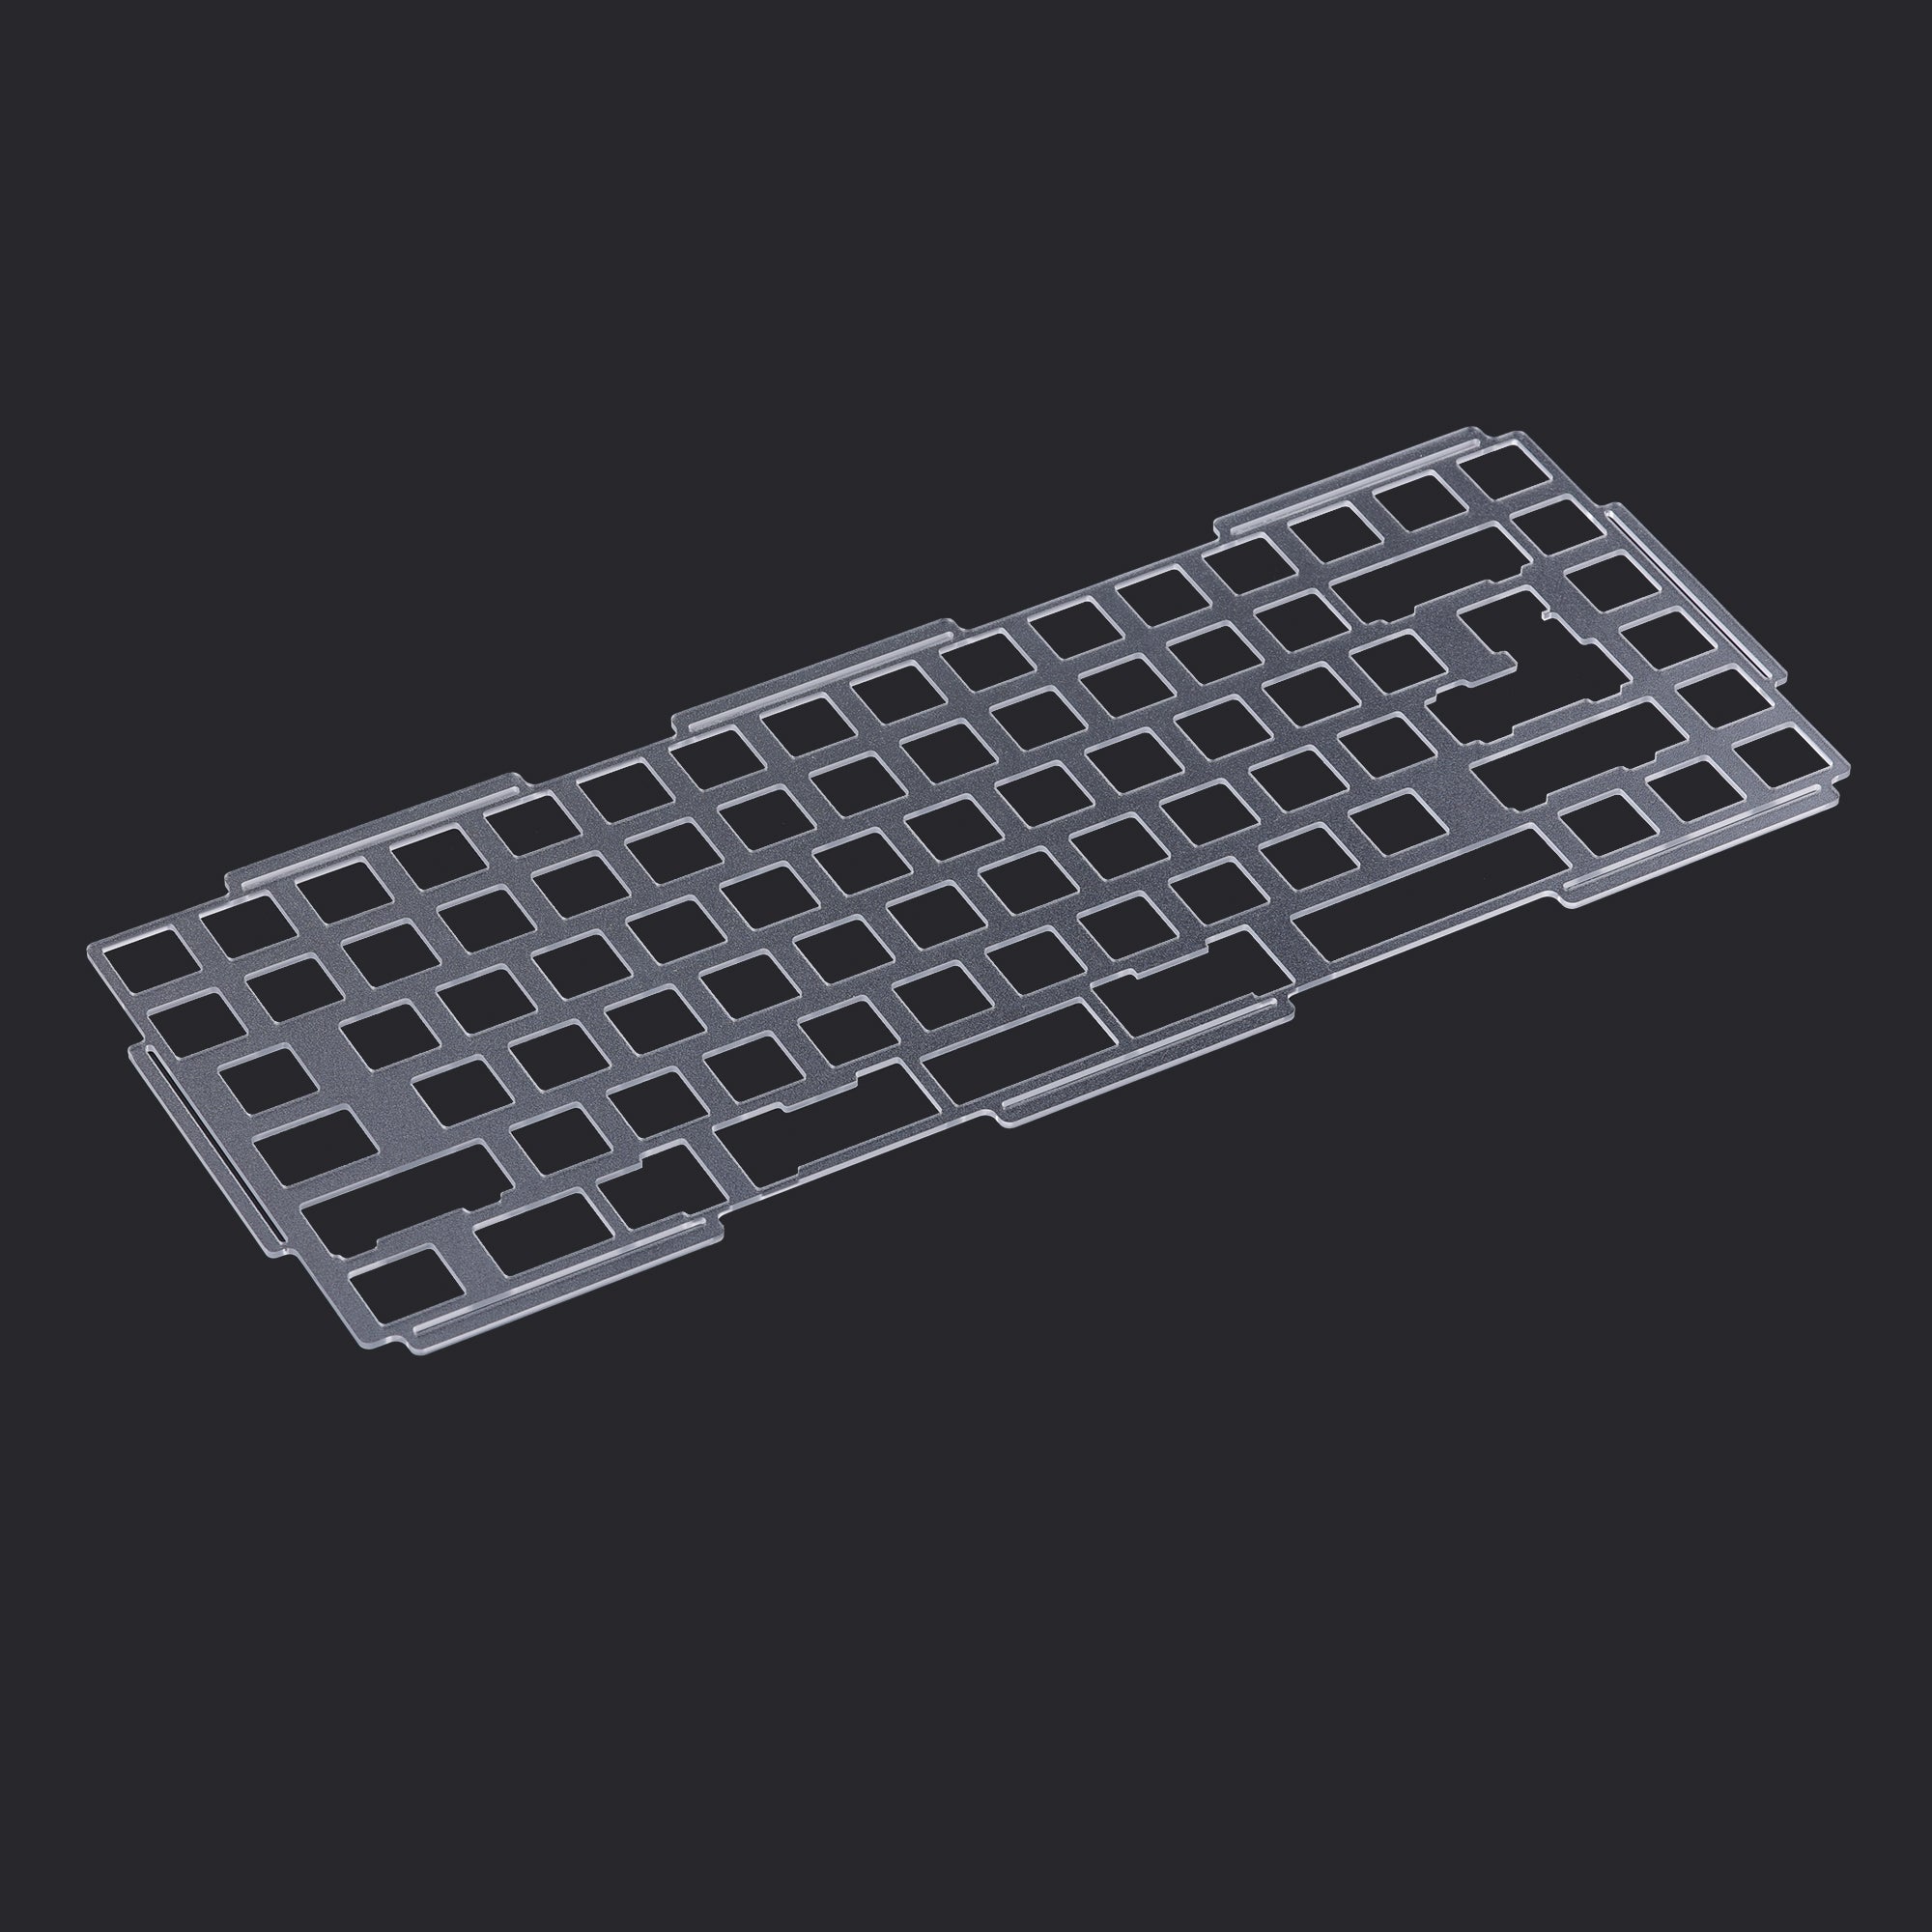 KBDfans Custom Keyboard D84 v2 plate（including gasket)